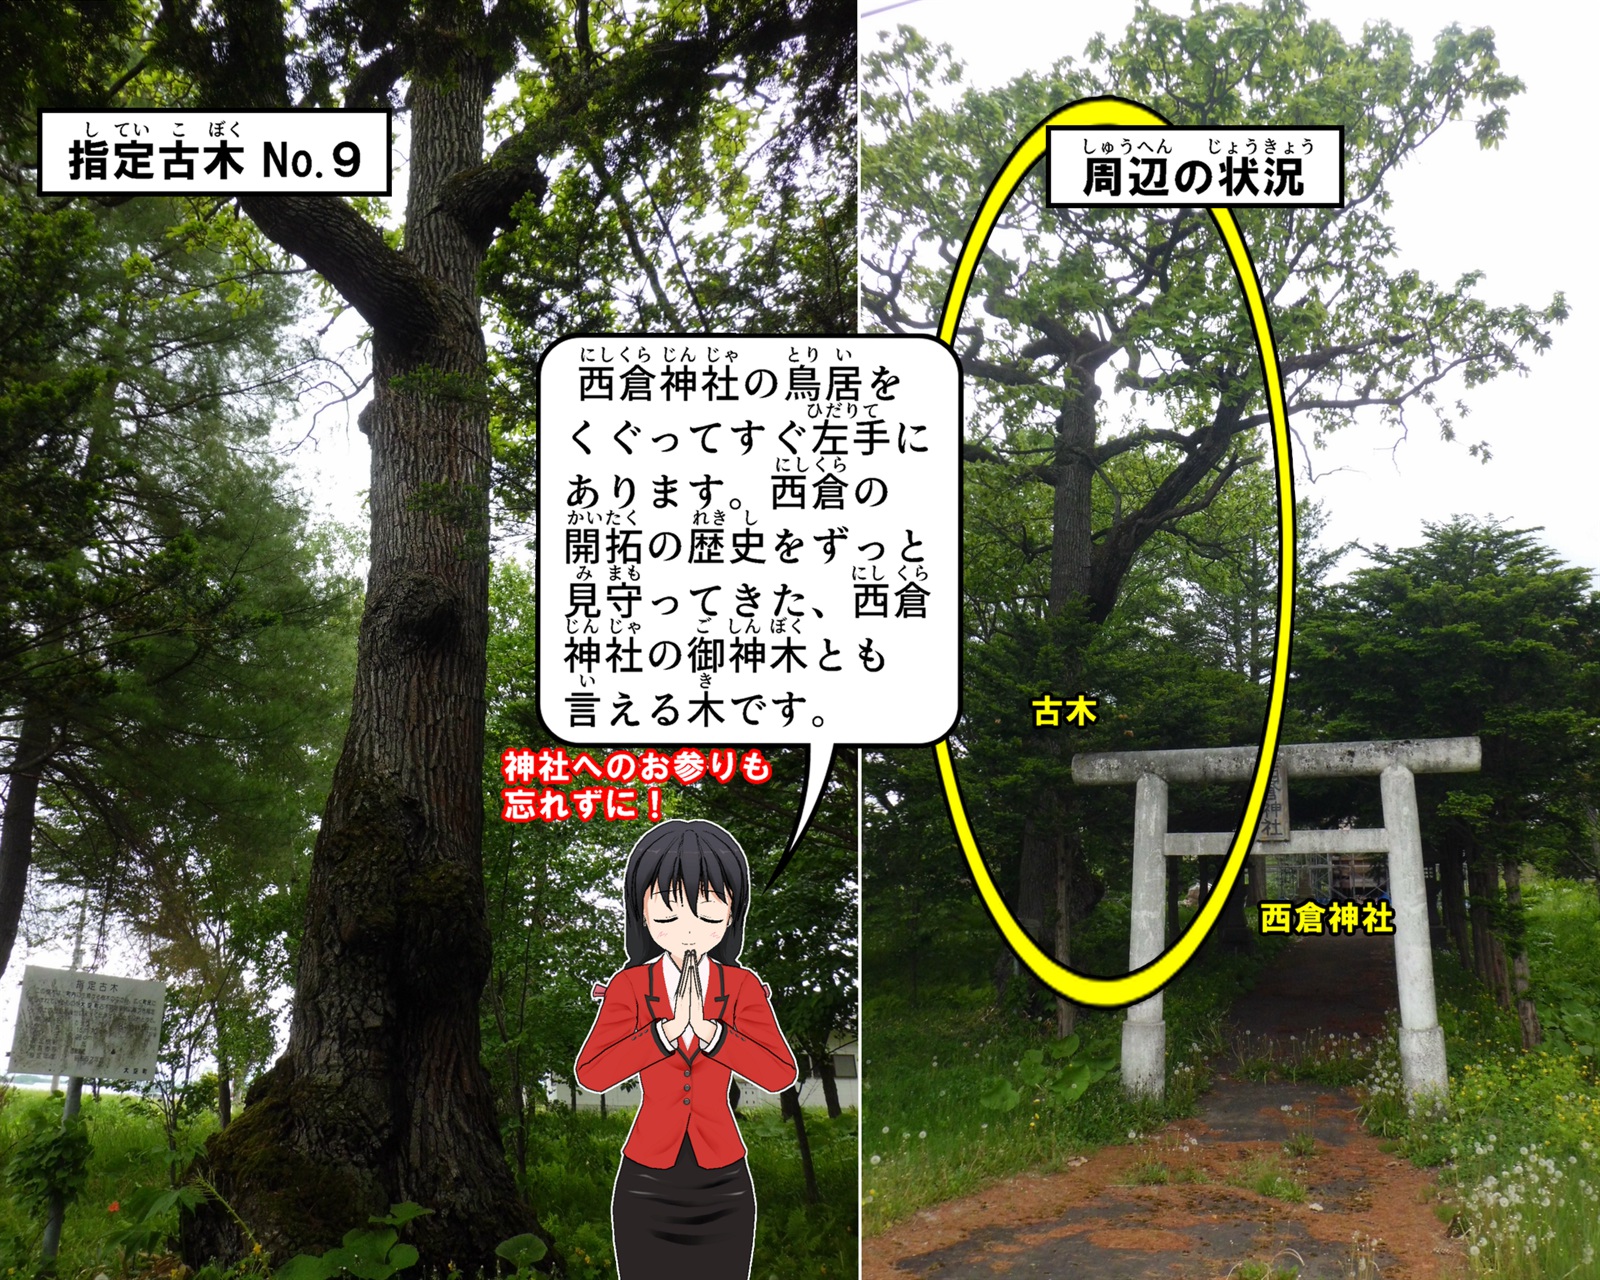 西倉神社の鳥居をくぐってすぐ左手にあるカシワの写真の説明をしているイラスト